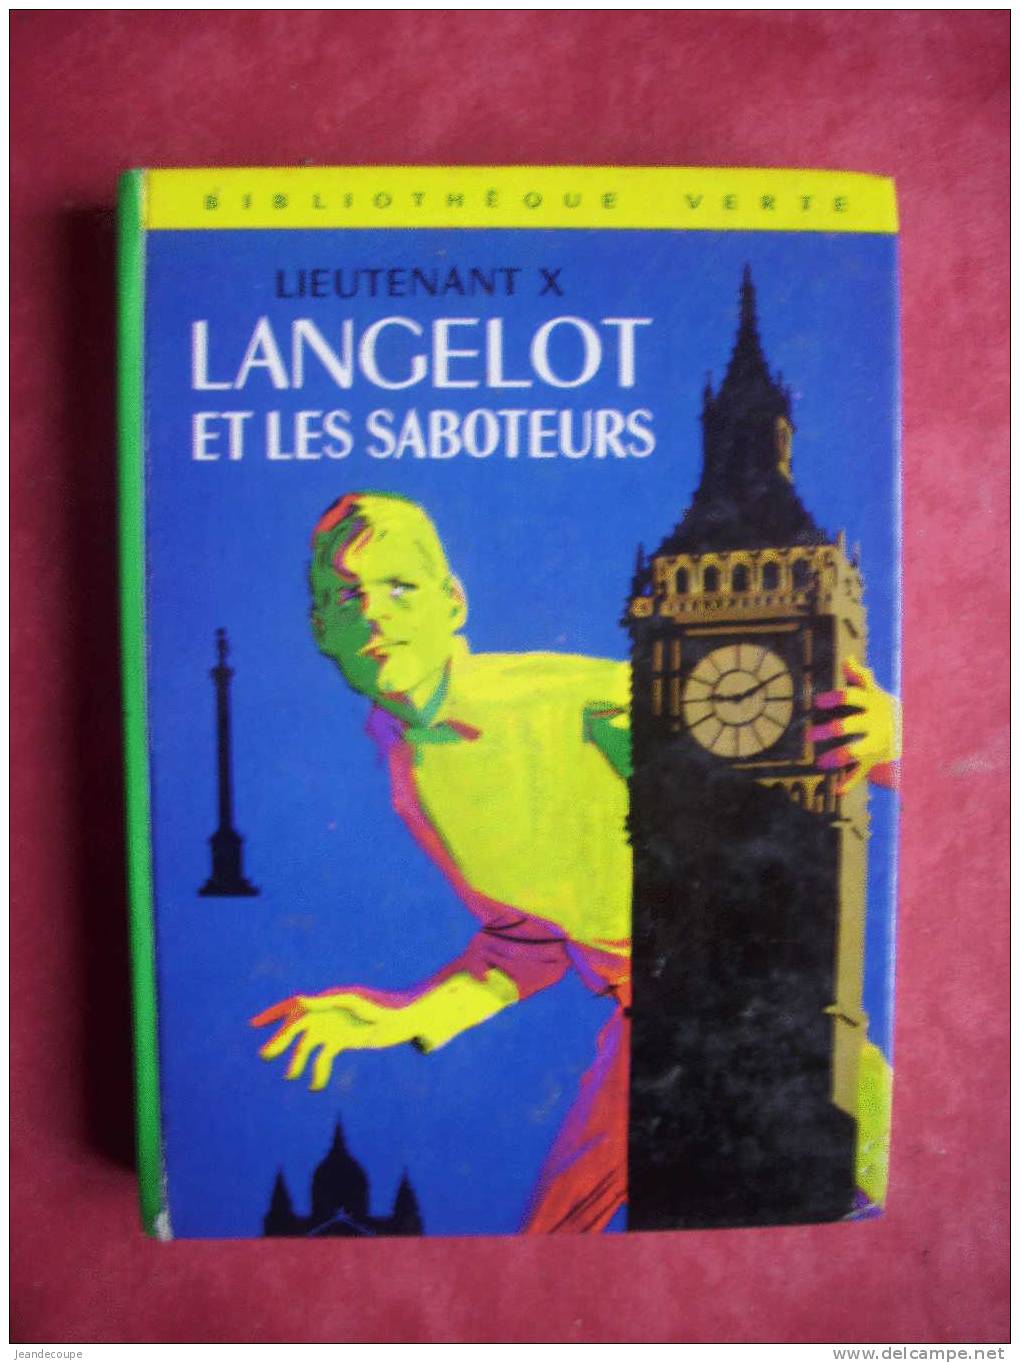 BIBLIOTHEQUE VERTE - Lieutenant X - Langelot Et Les Saboteurs - Illustration ( Maurice Paulin ) 1966 éd O - Bibliothèque Verte